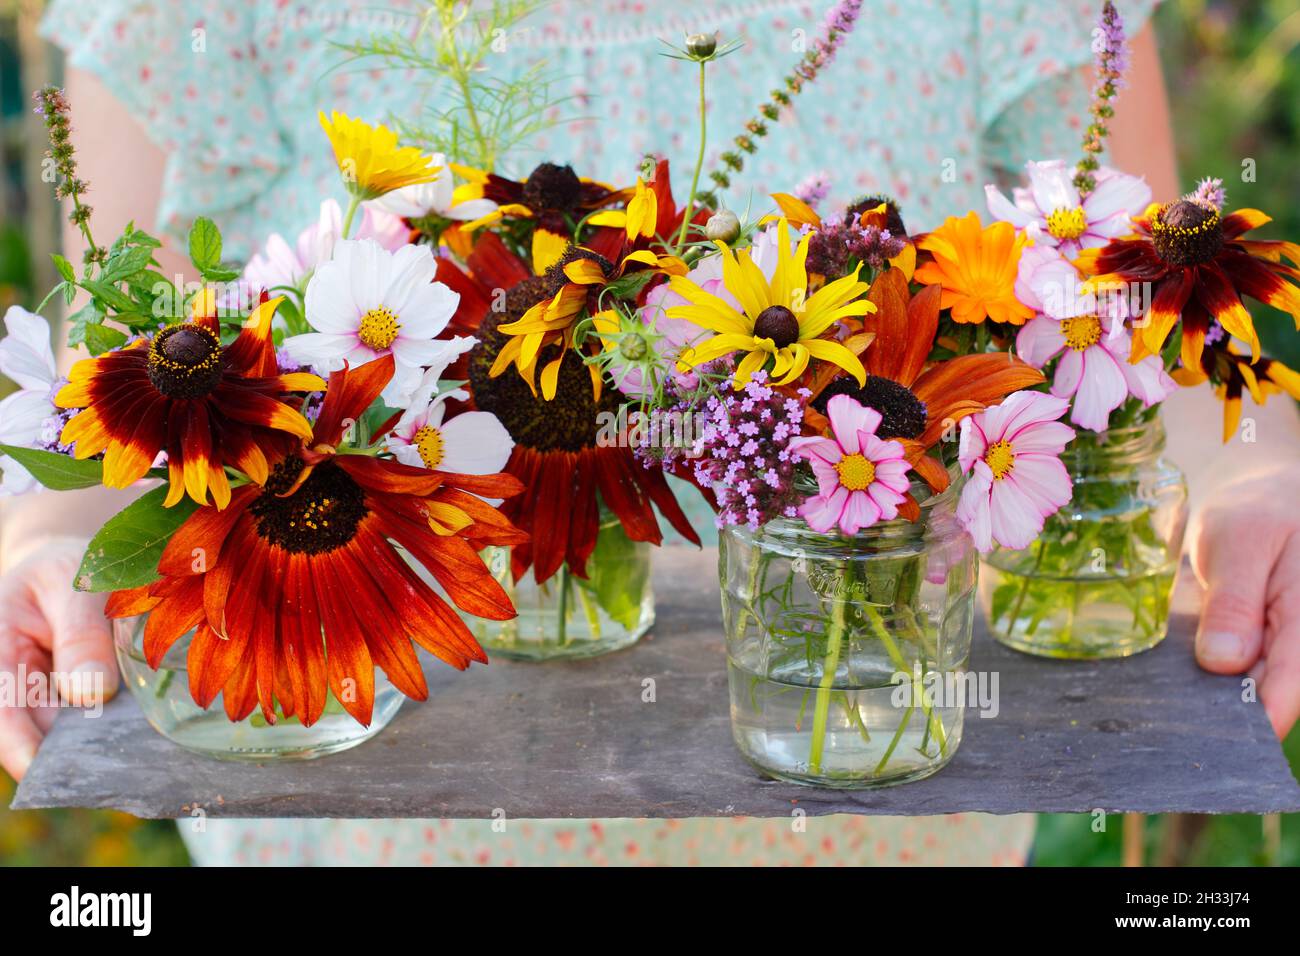 Frau mit frischen Blumen aus ihrem Schneidergarten - Sonnenblume, Rudbeckia, Eisenkraut, Kosmos, Minze und Topfmarigold in recycelten Gläsern ausgestellt. VEREINIGTES KÖNIGREICH Stockfoto